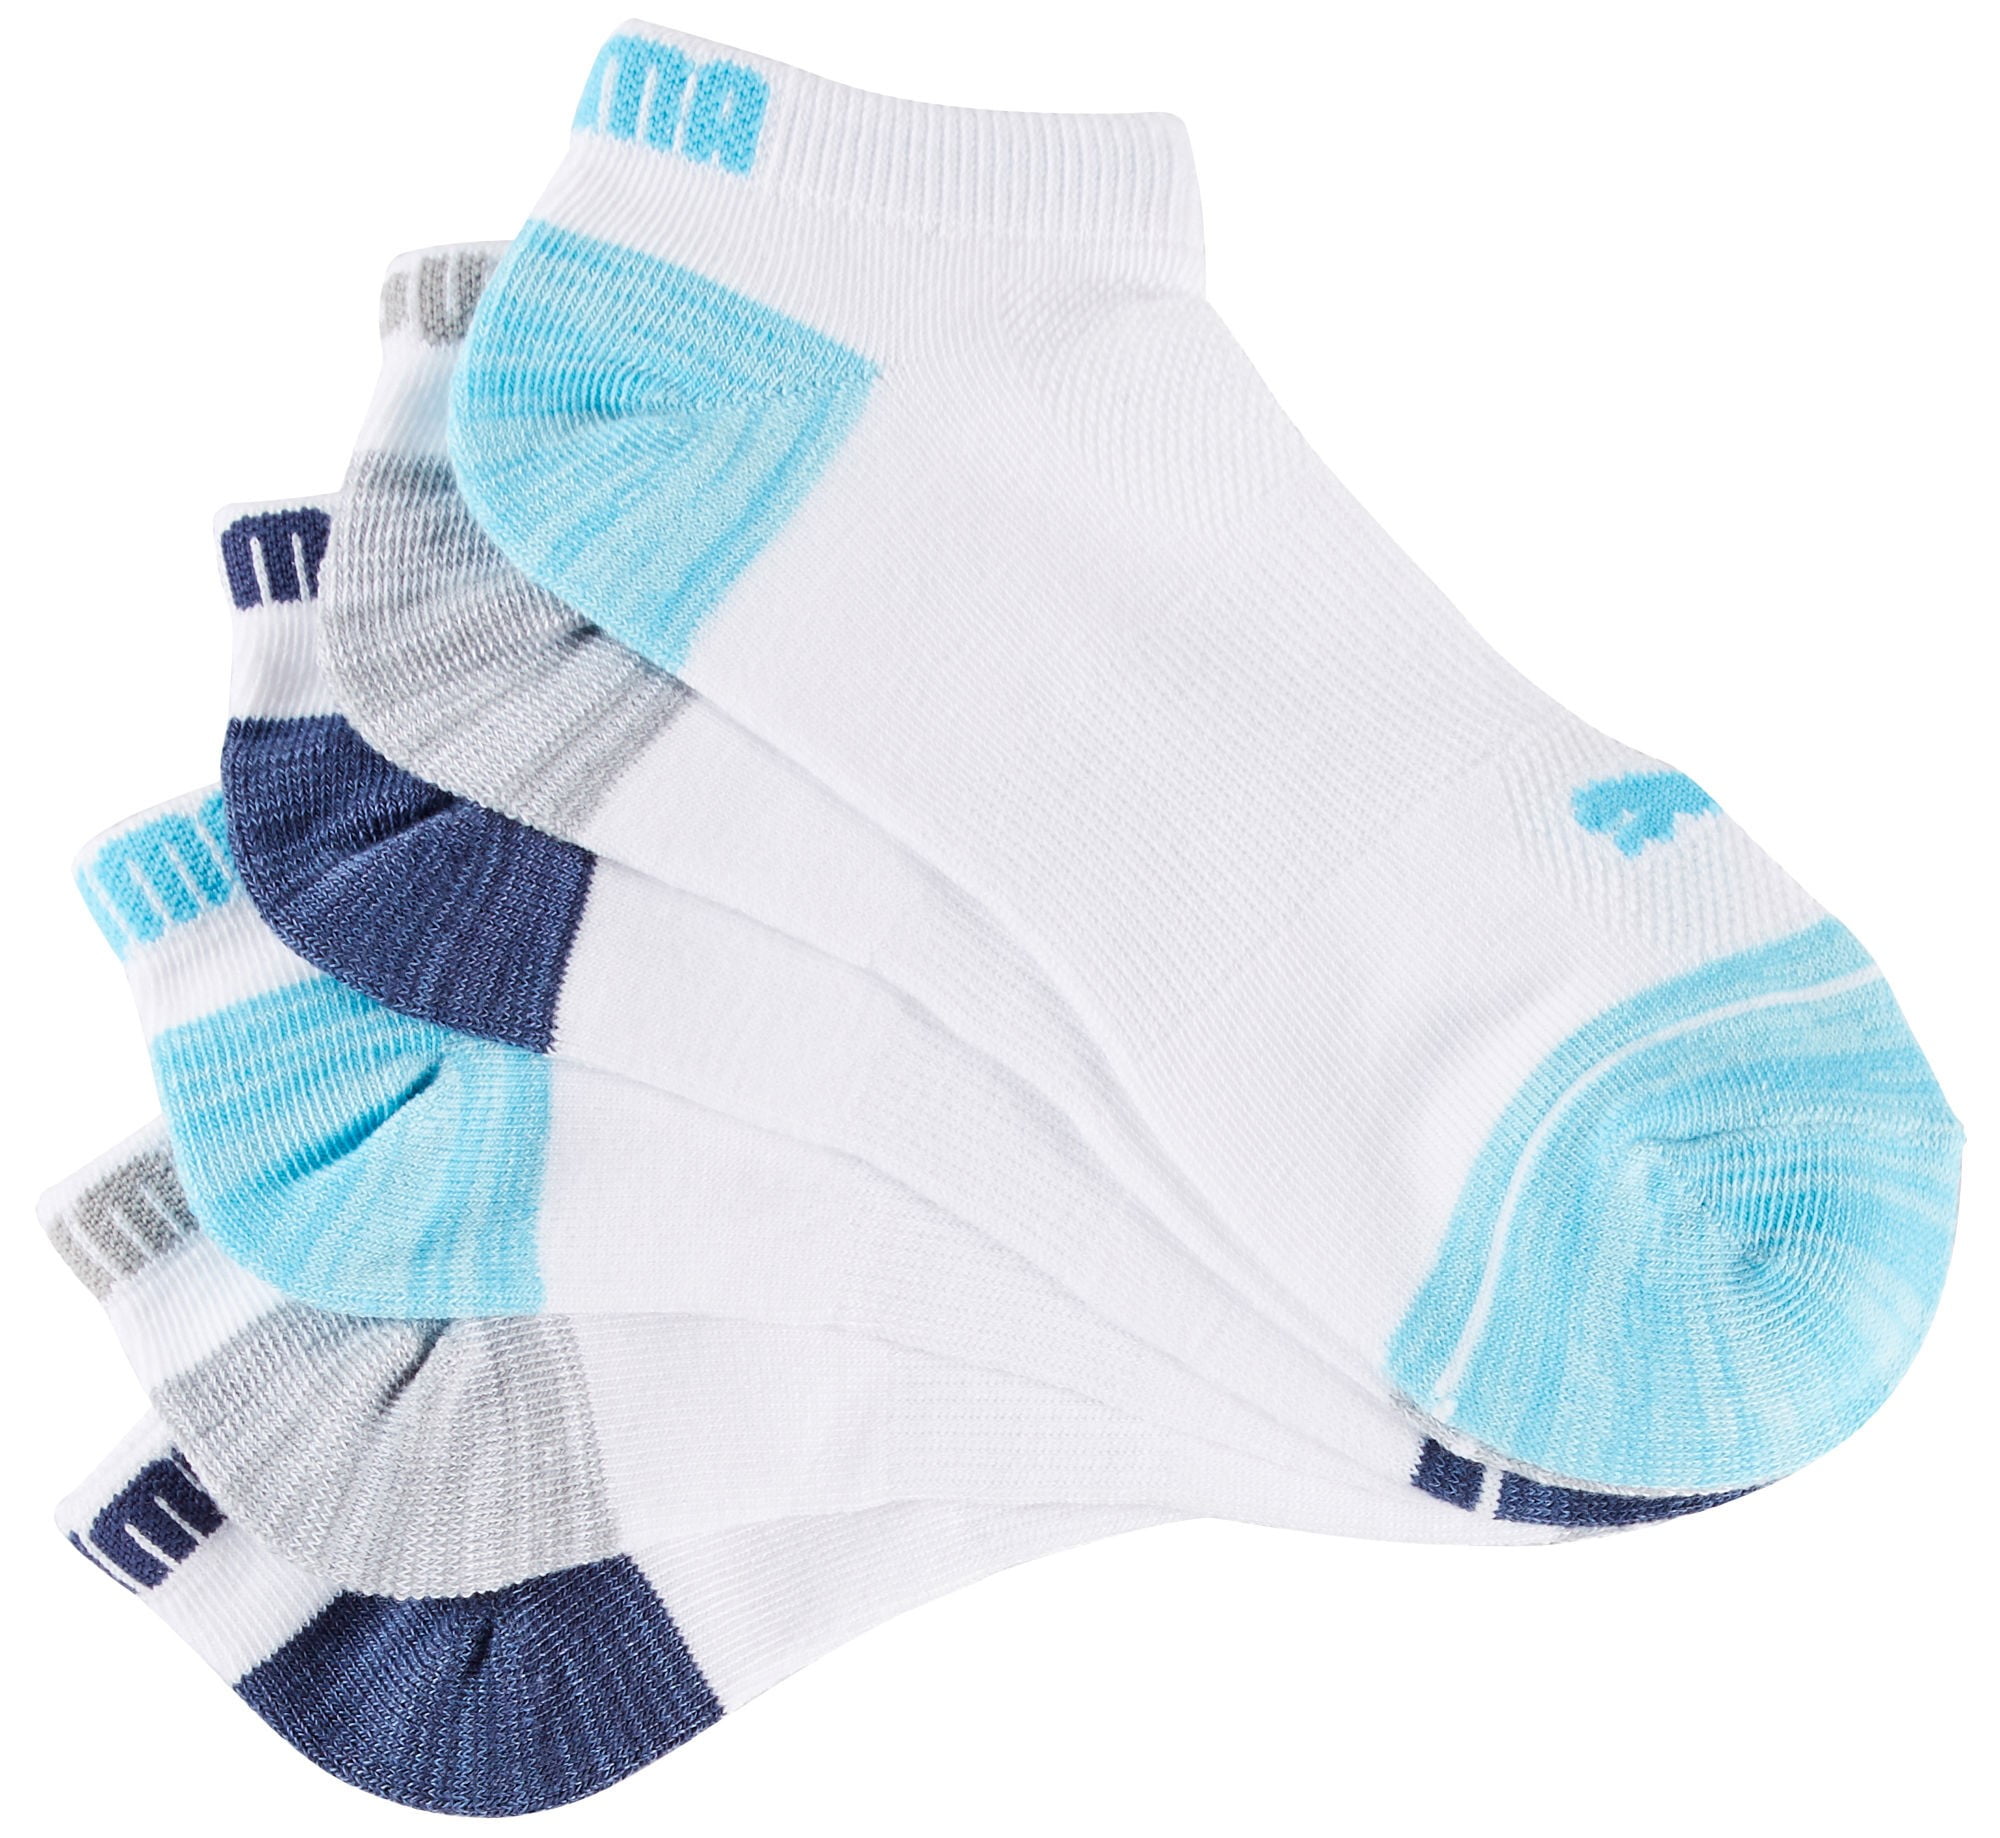 puma blue socks